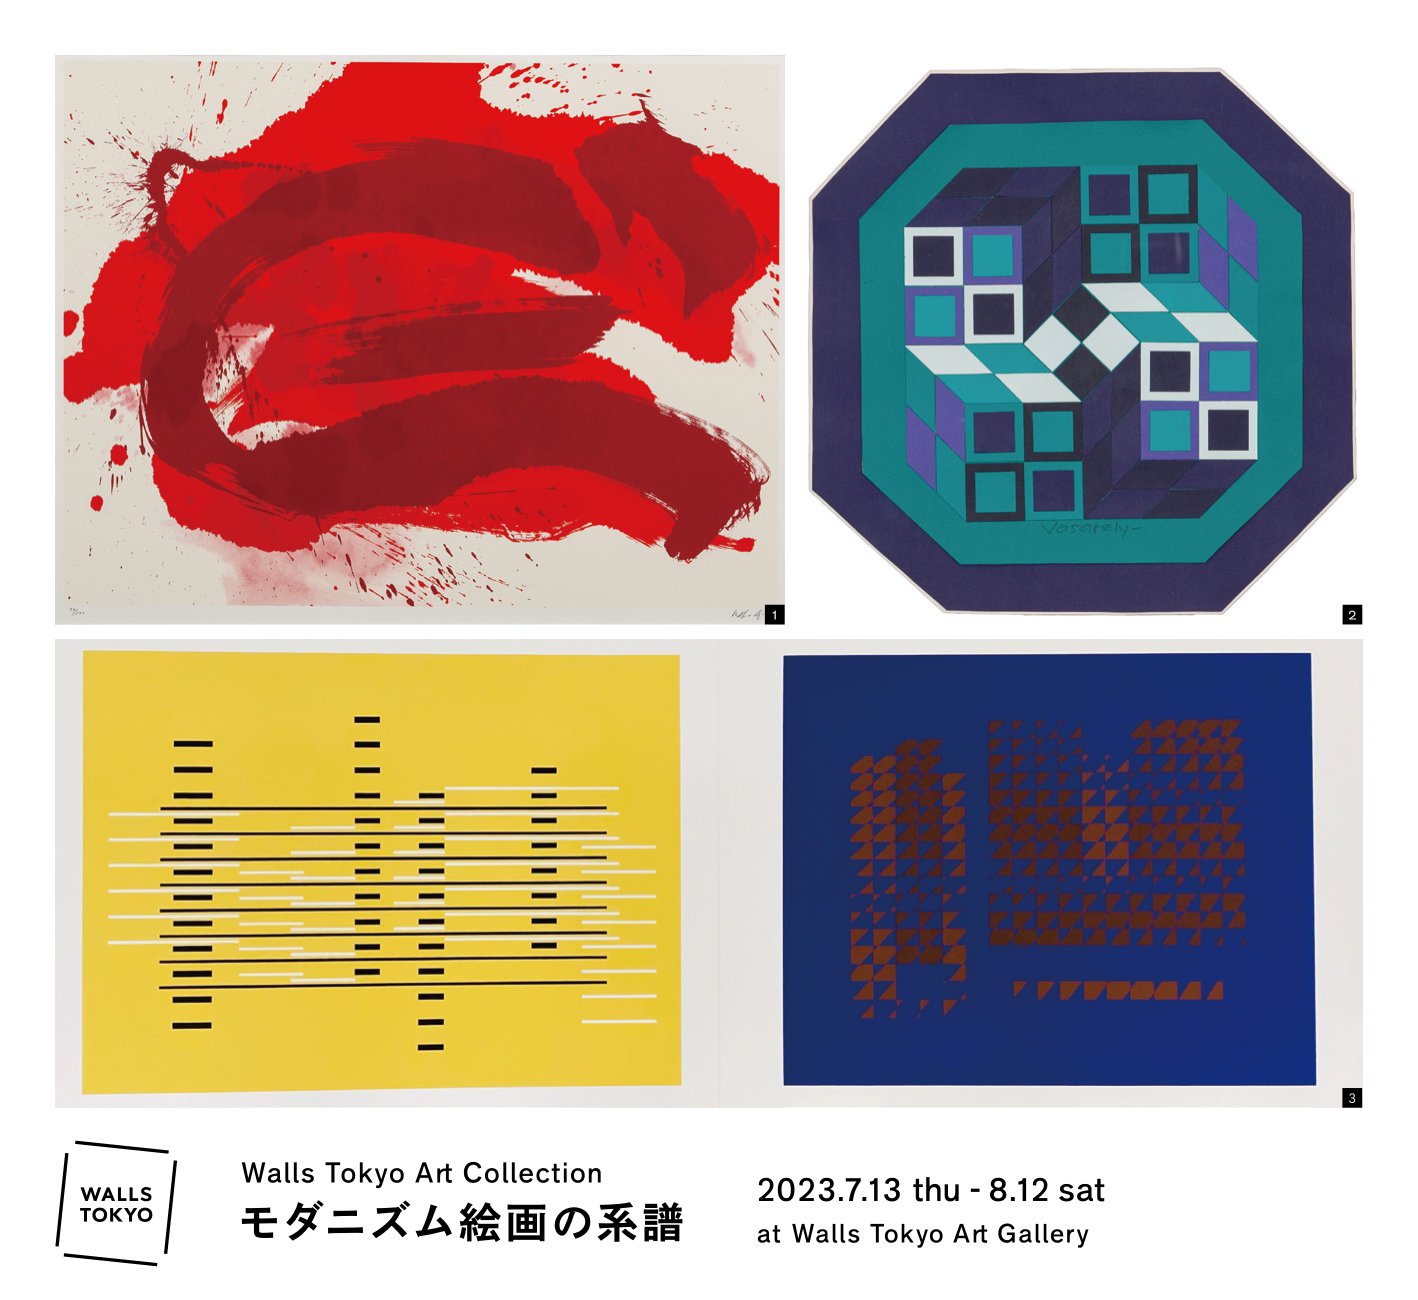 Walls Tokyo Art Collection /モダニズム絵画の系譜